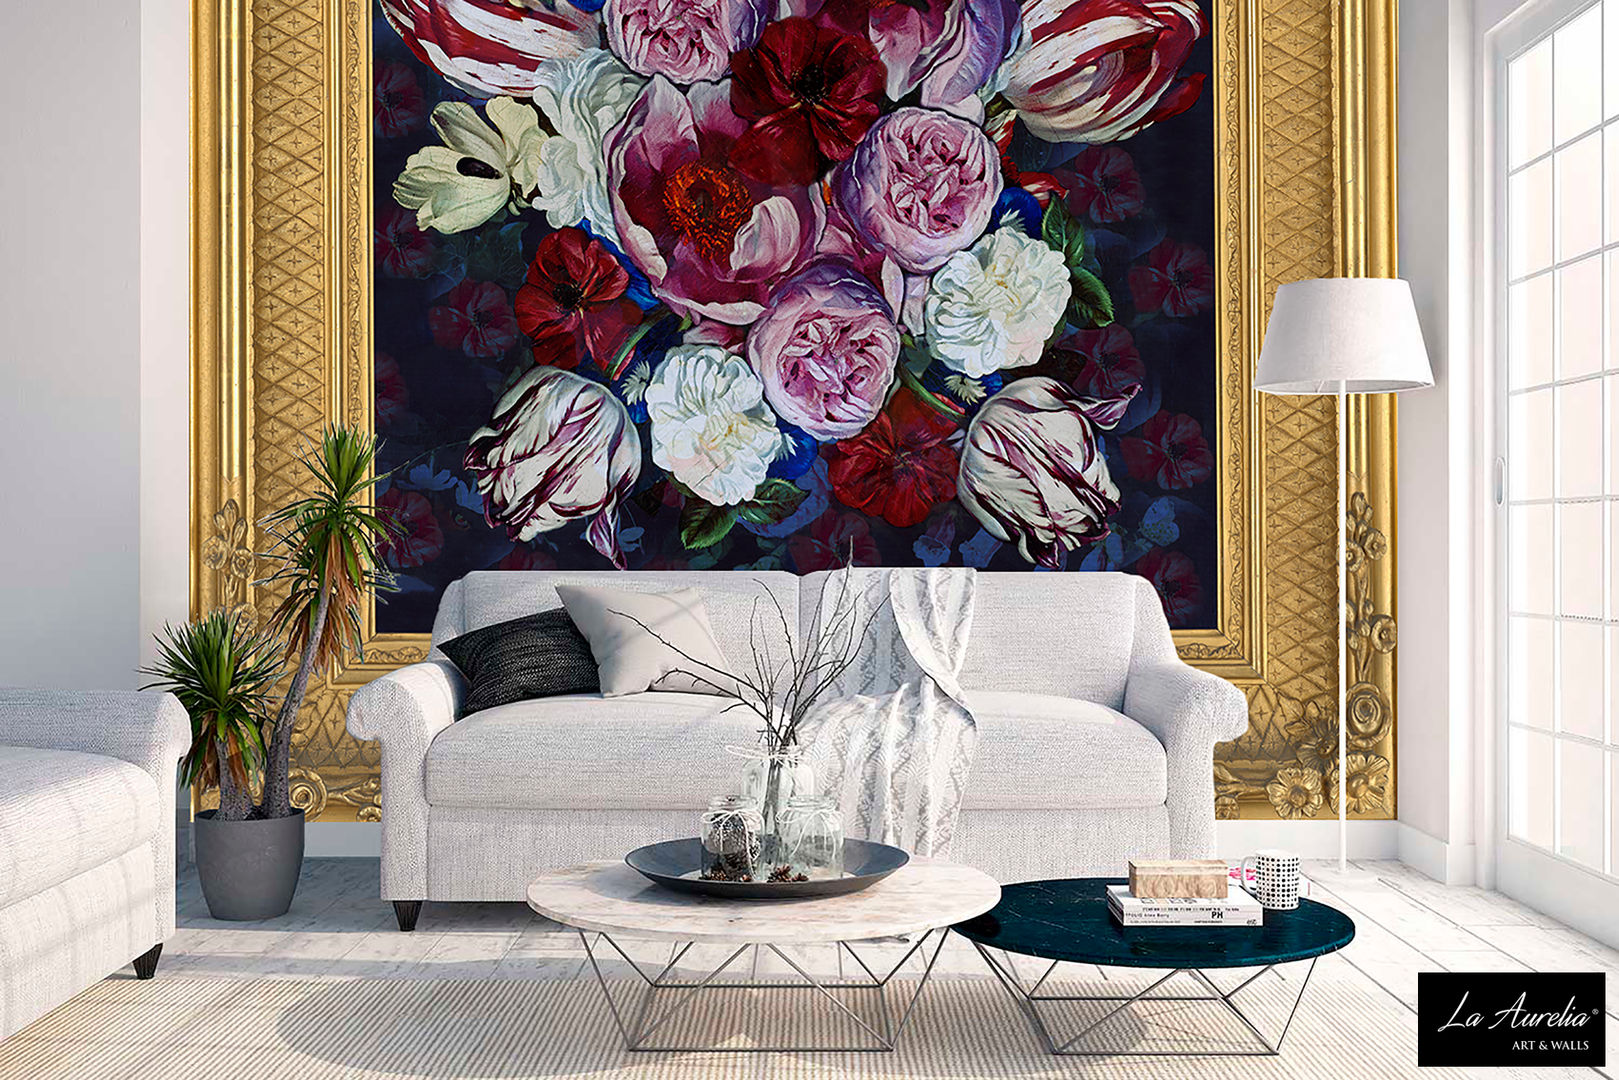 True Colors -Framed- wallpaper La Aurelia جدران wallpaper,wallcovering,wallcoverings,mural,wallart,design,flowers,floral,tulips,frame,gold,la aurelia,Wallpaper